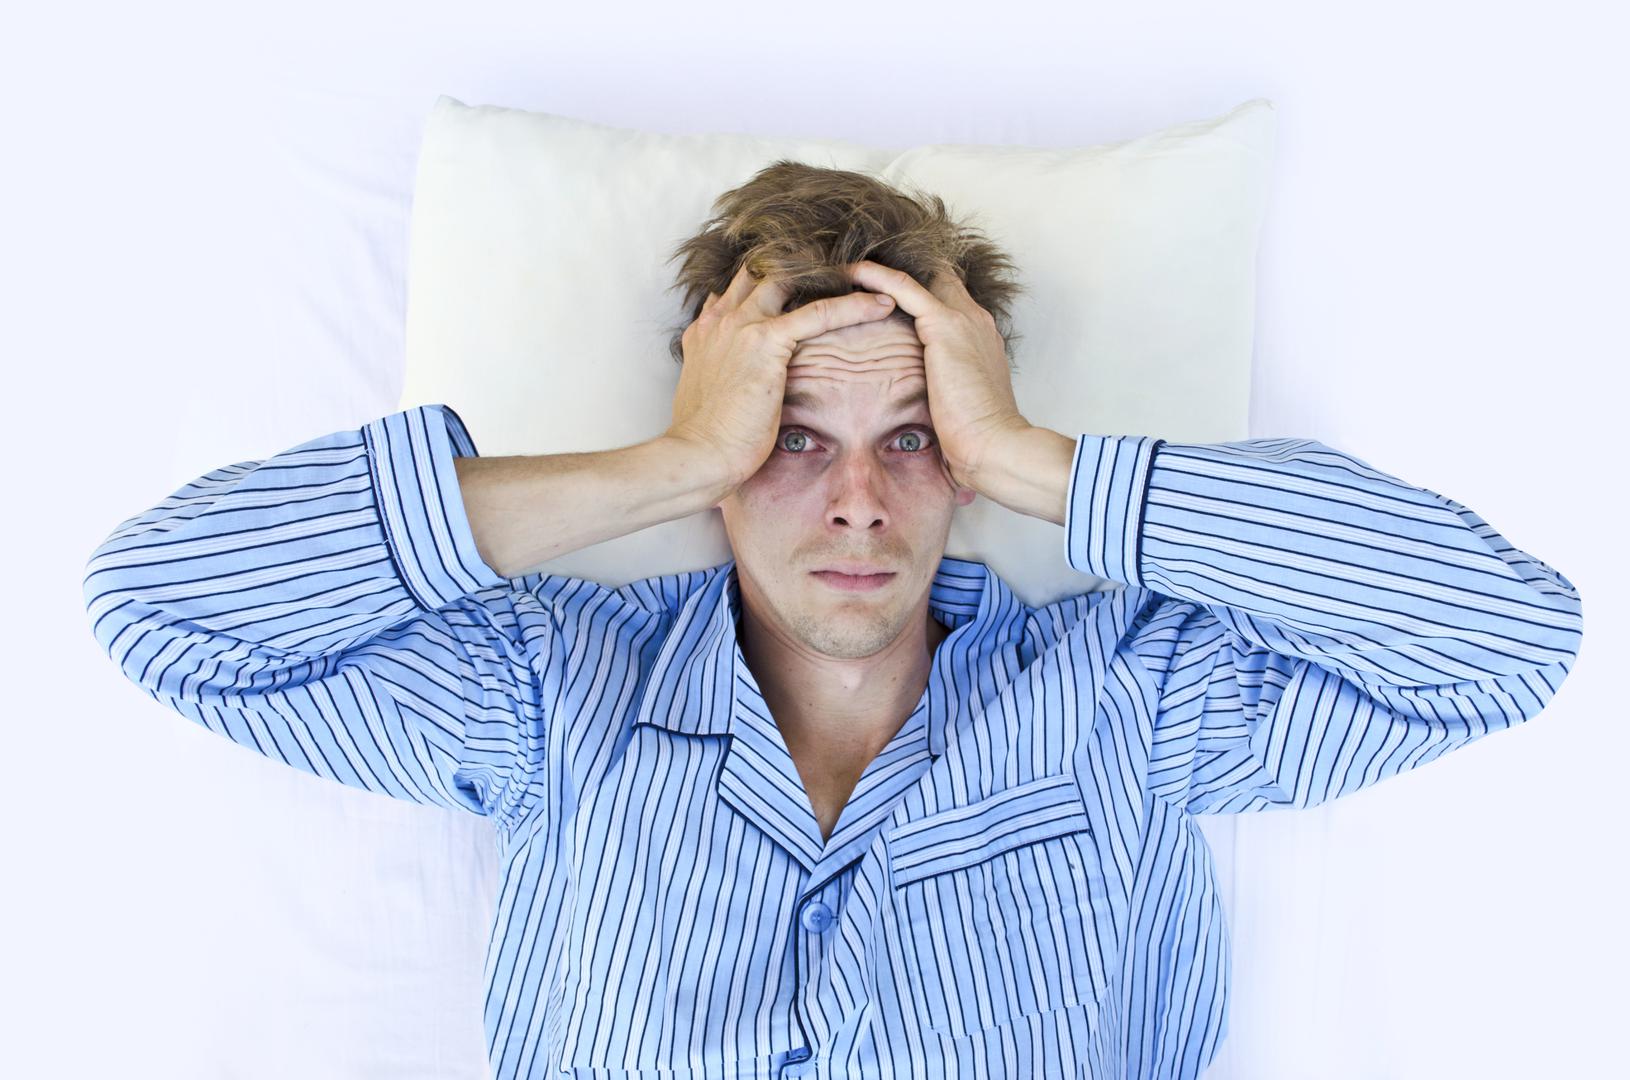 Budite se umorni - Ako vam je svako ustajanje iz kreveta ujutro borba, to je znak da ne spavate dovoljno. Kvalitetan san itekako je bitan za cjelokupno zdravlje, stoga pokušajte ići ranije na spavanje kak obiste osigurali između 7 i 9 sati sna.